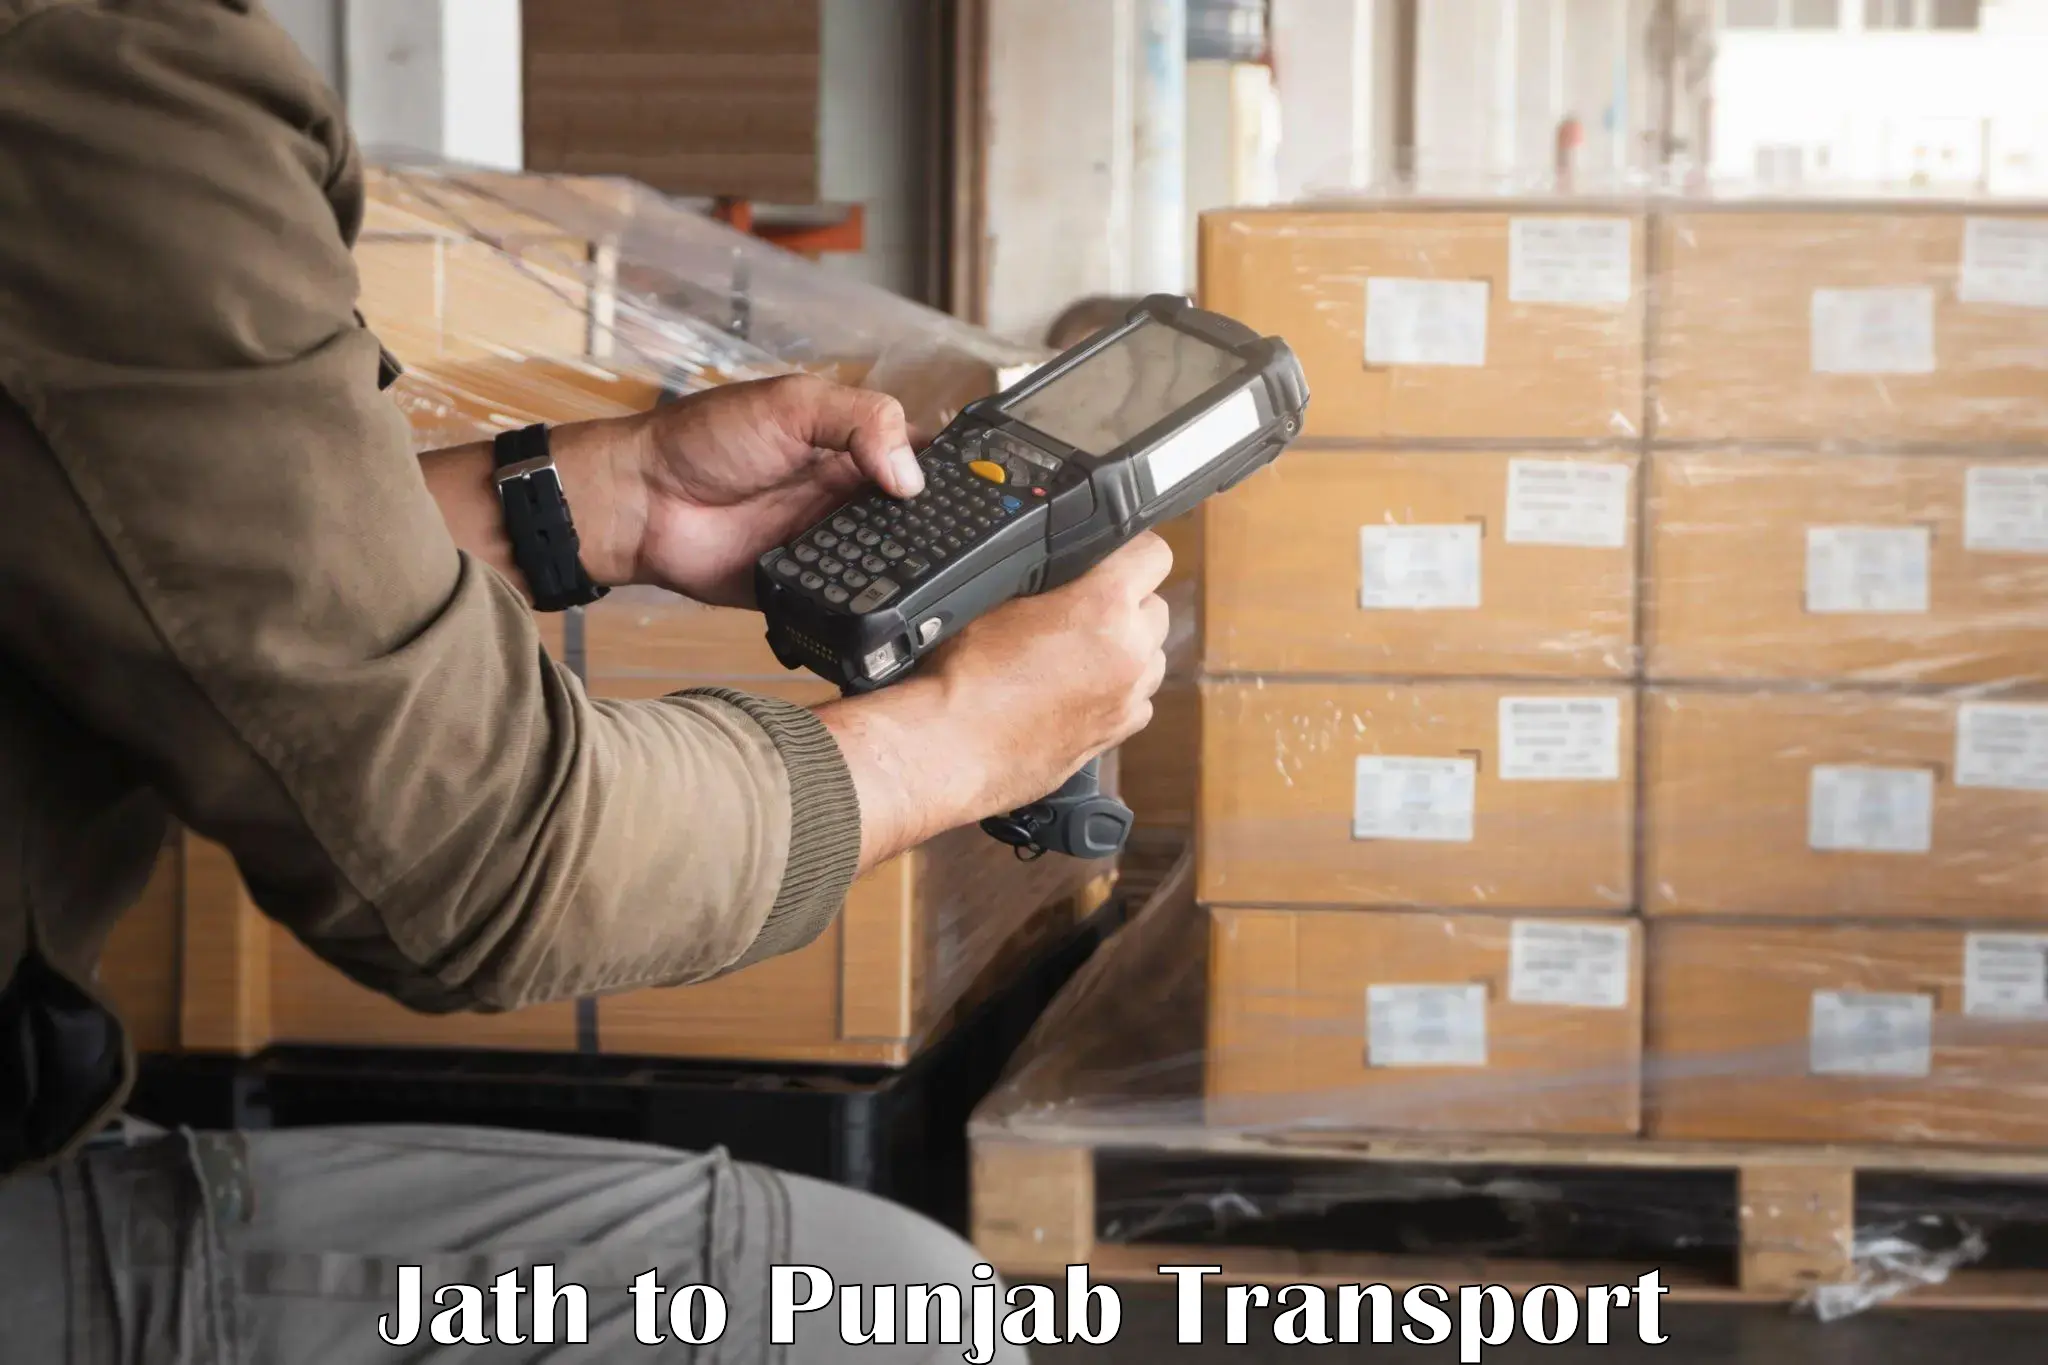 Bike transport service Jath to Punjab